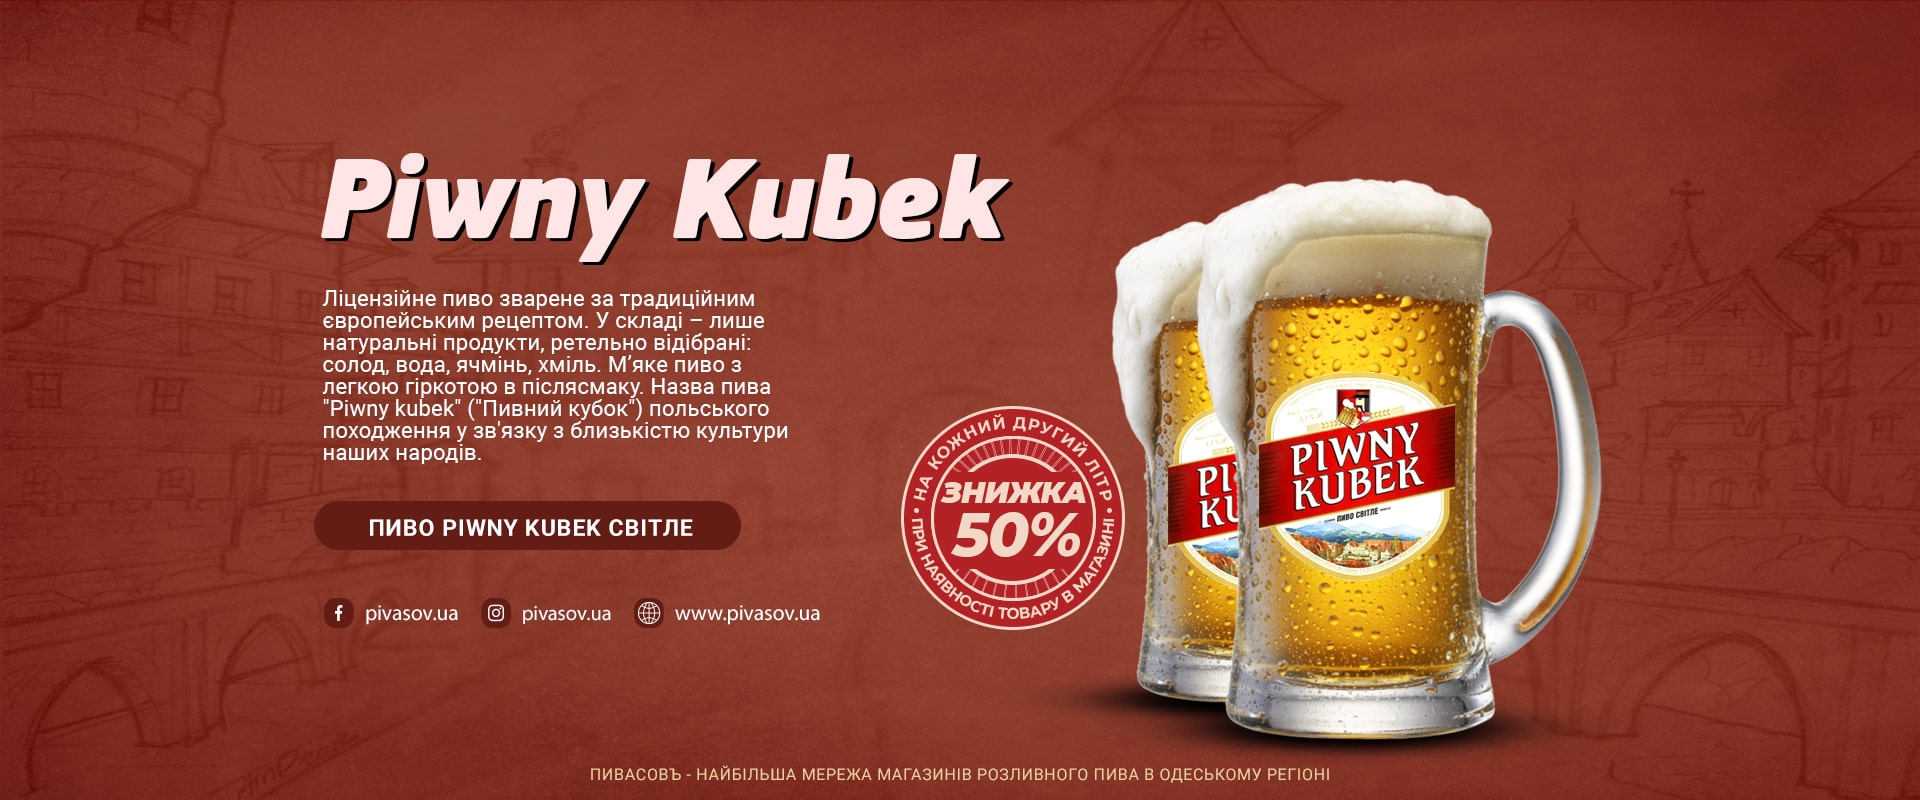 Пиво Piwny Kubek